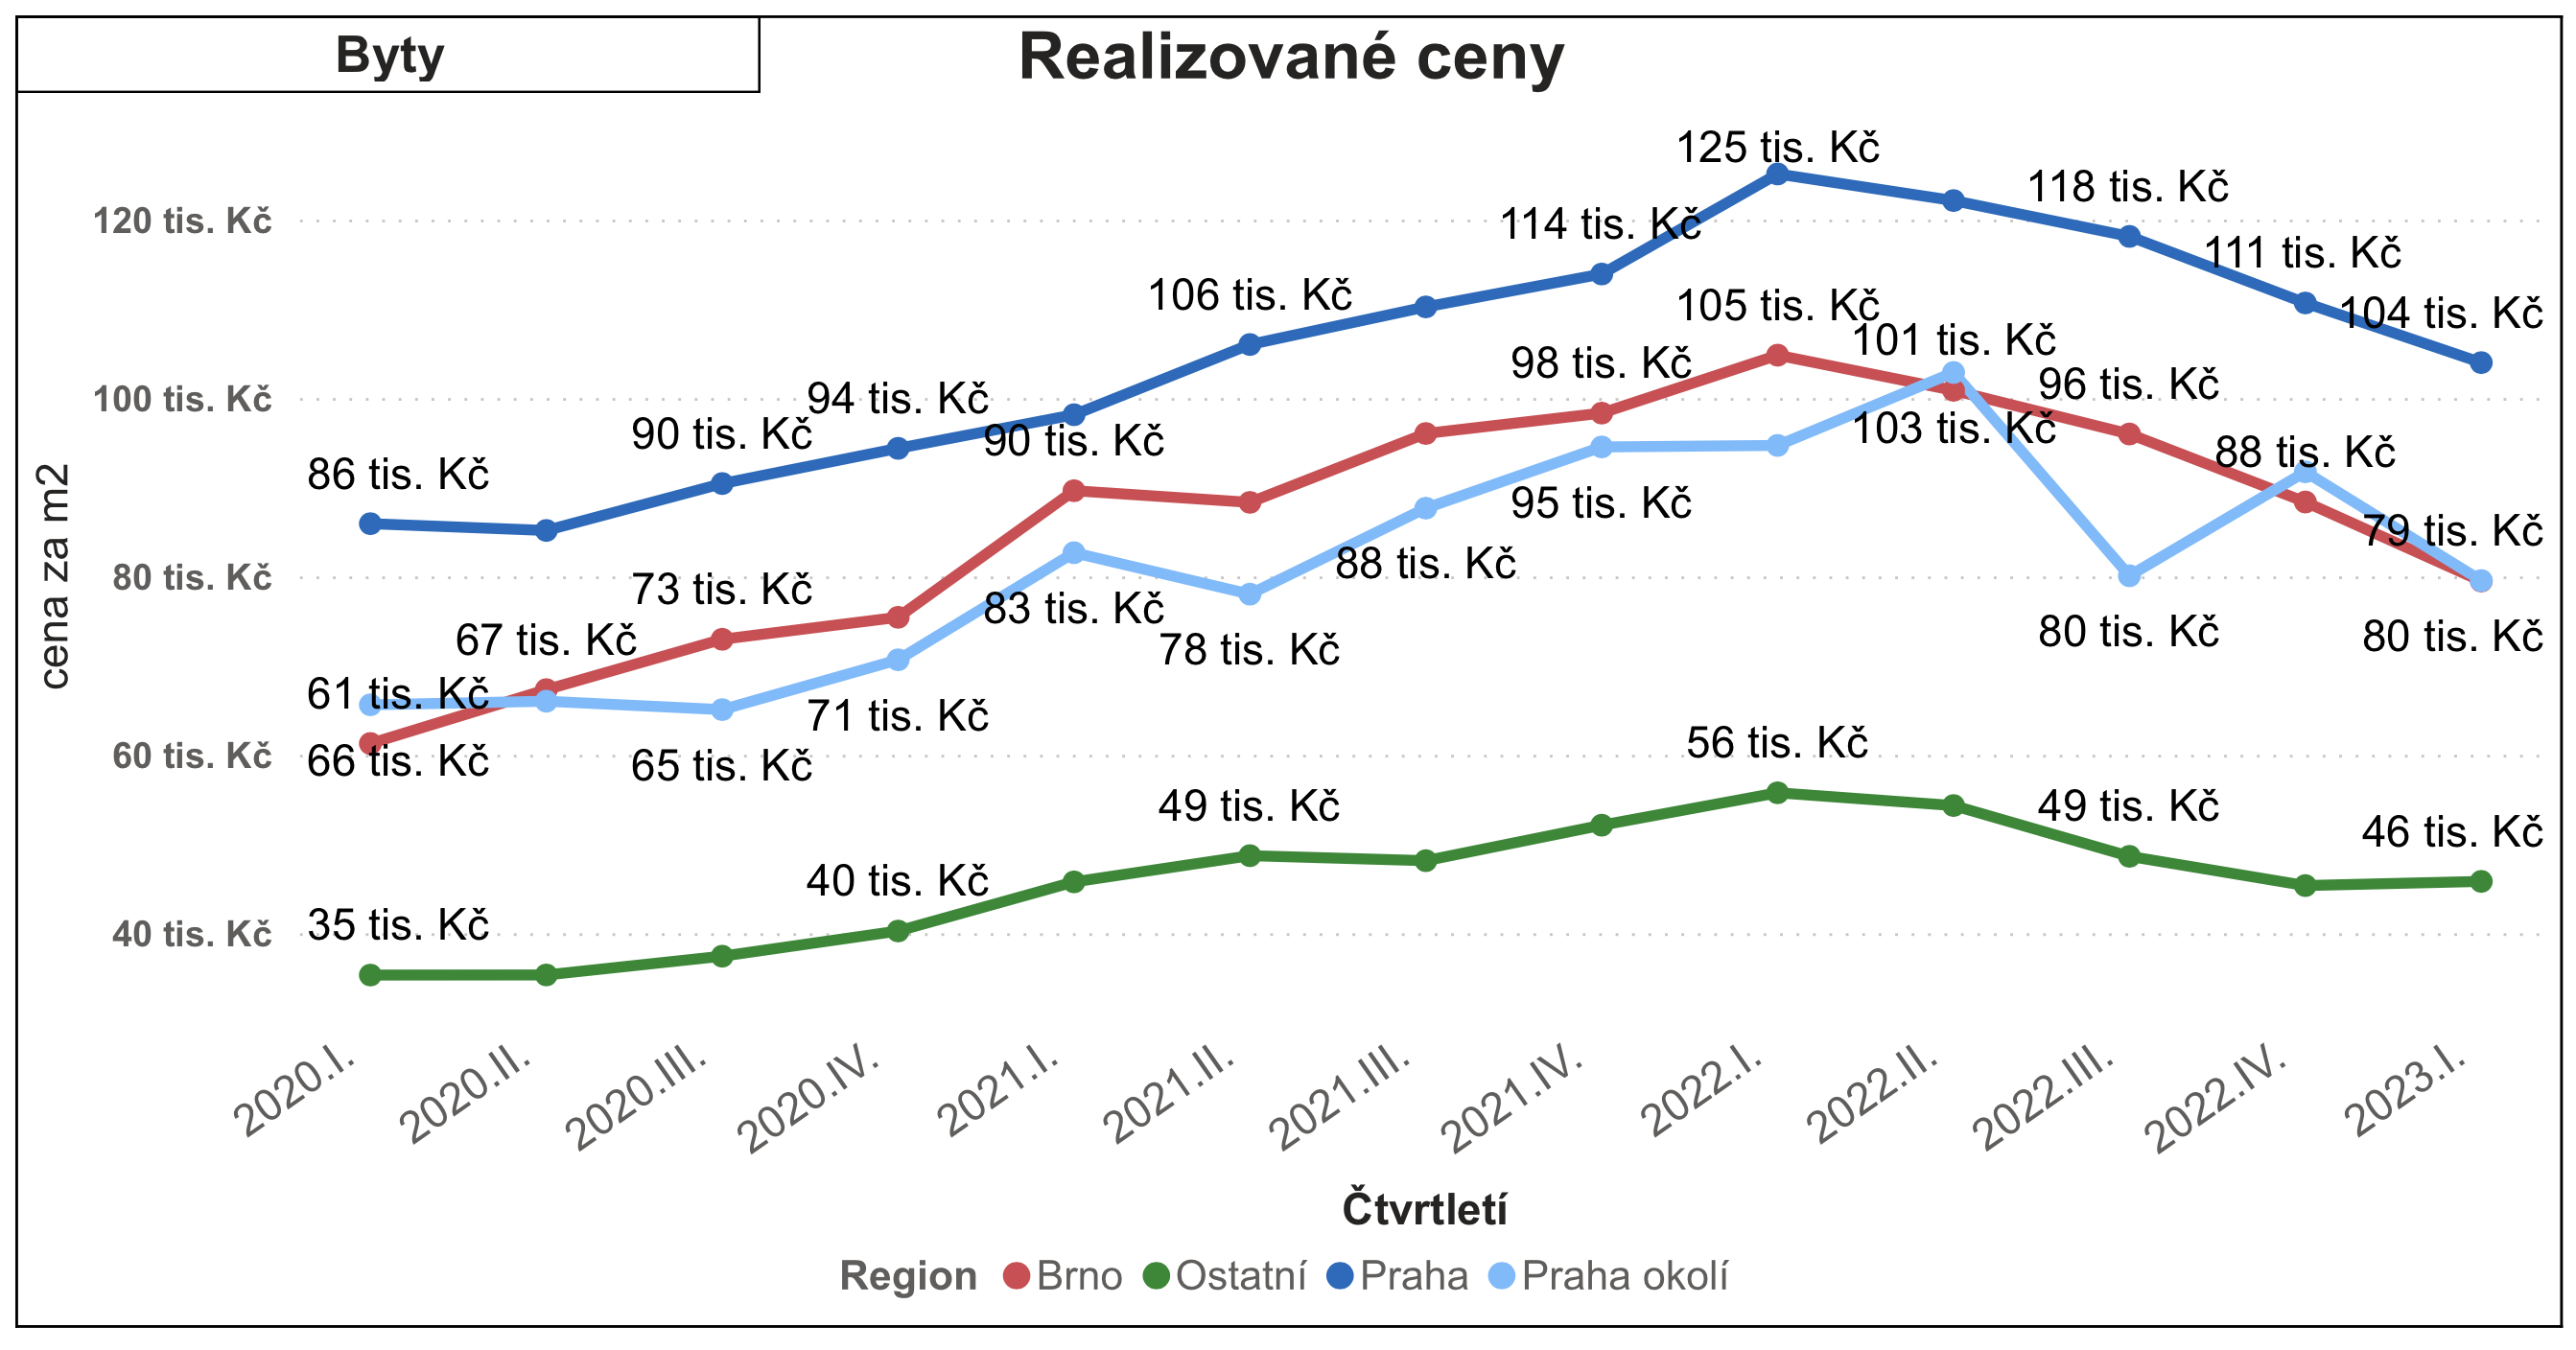 Realizované ceny bytů v ČR bez Prahy a Brna